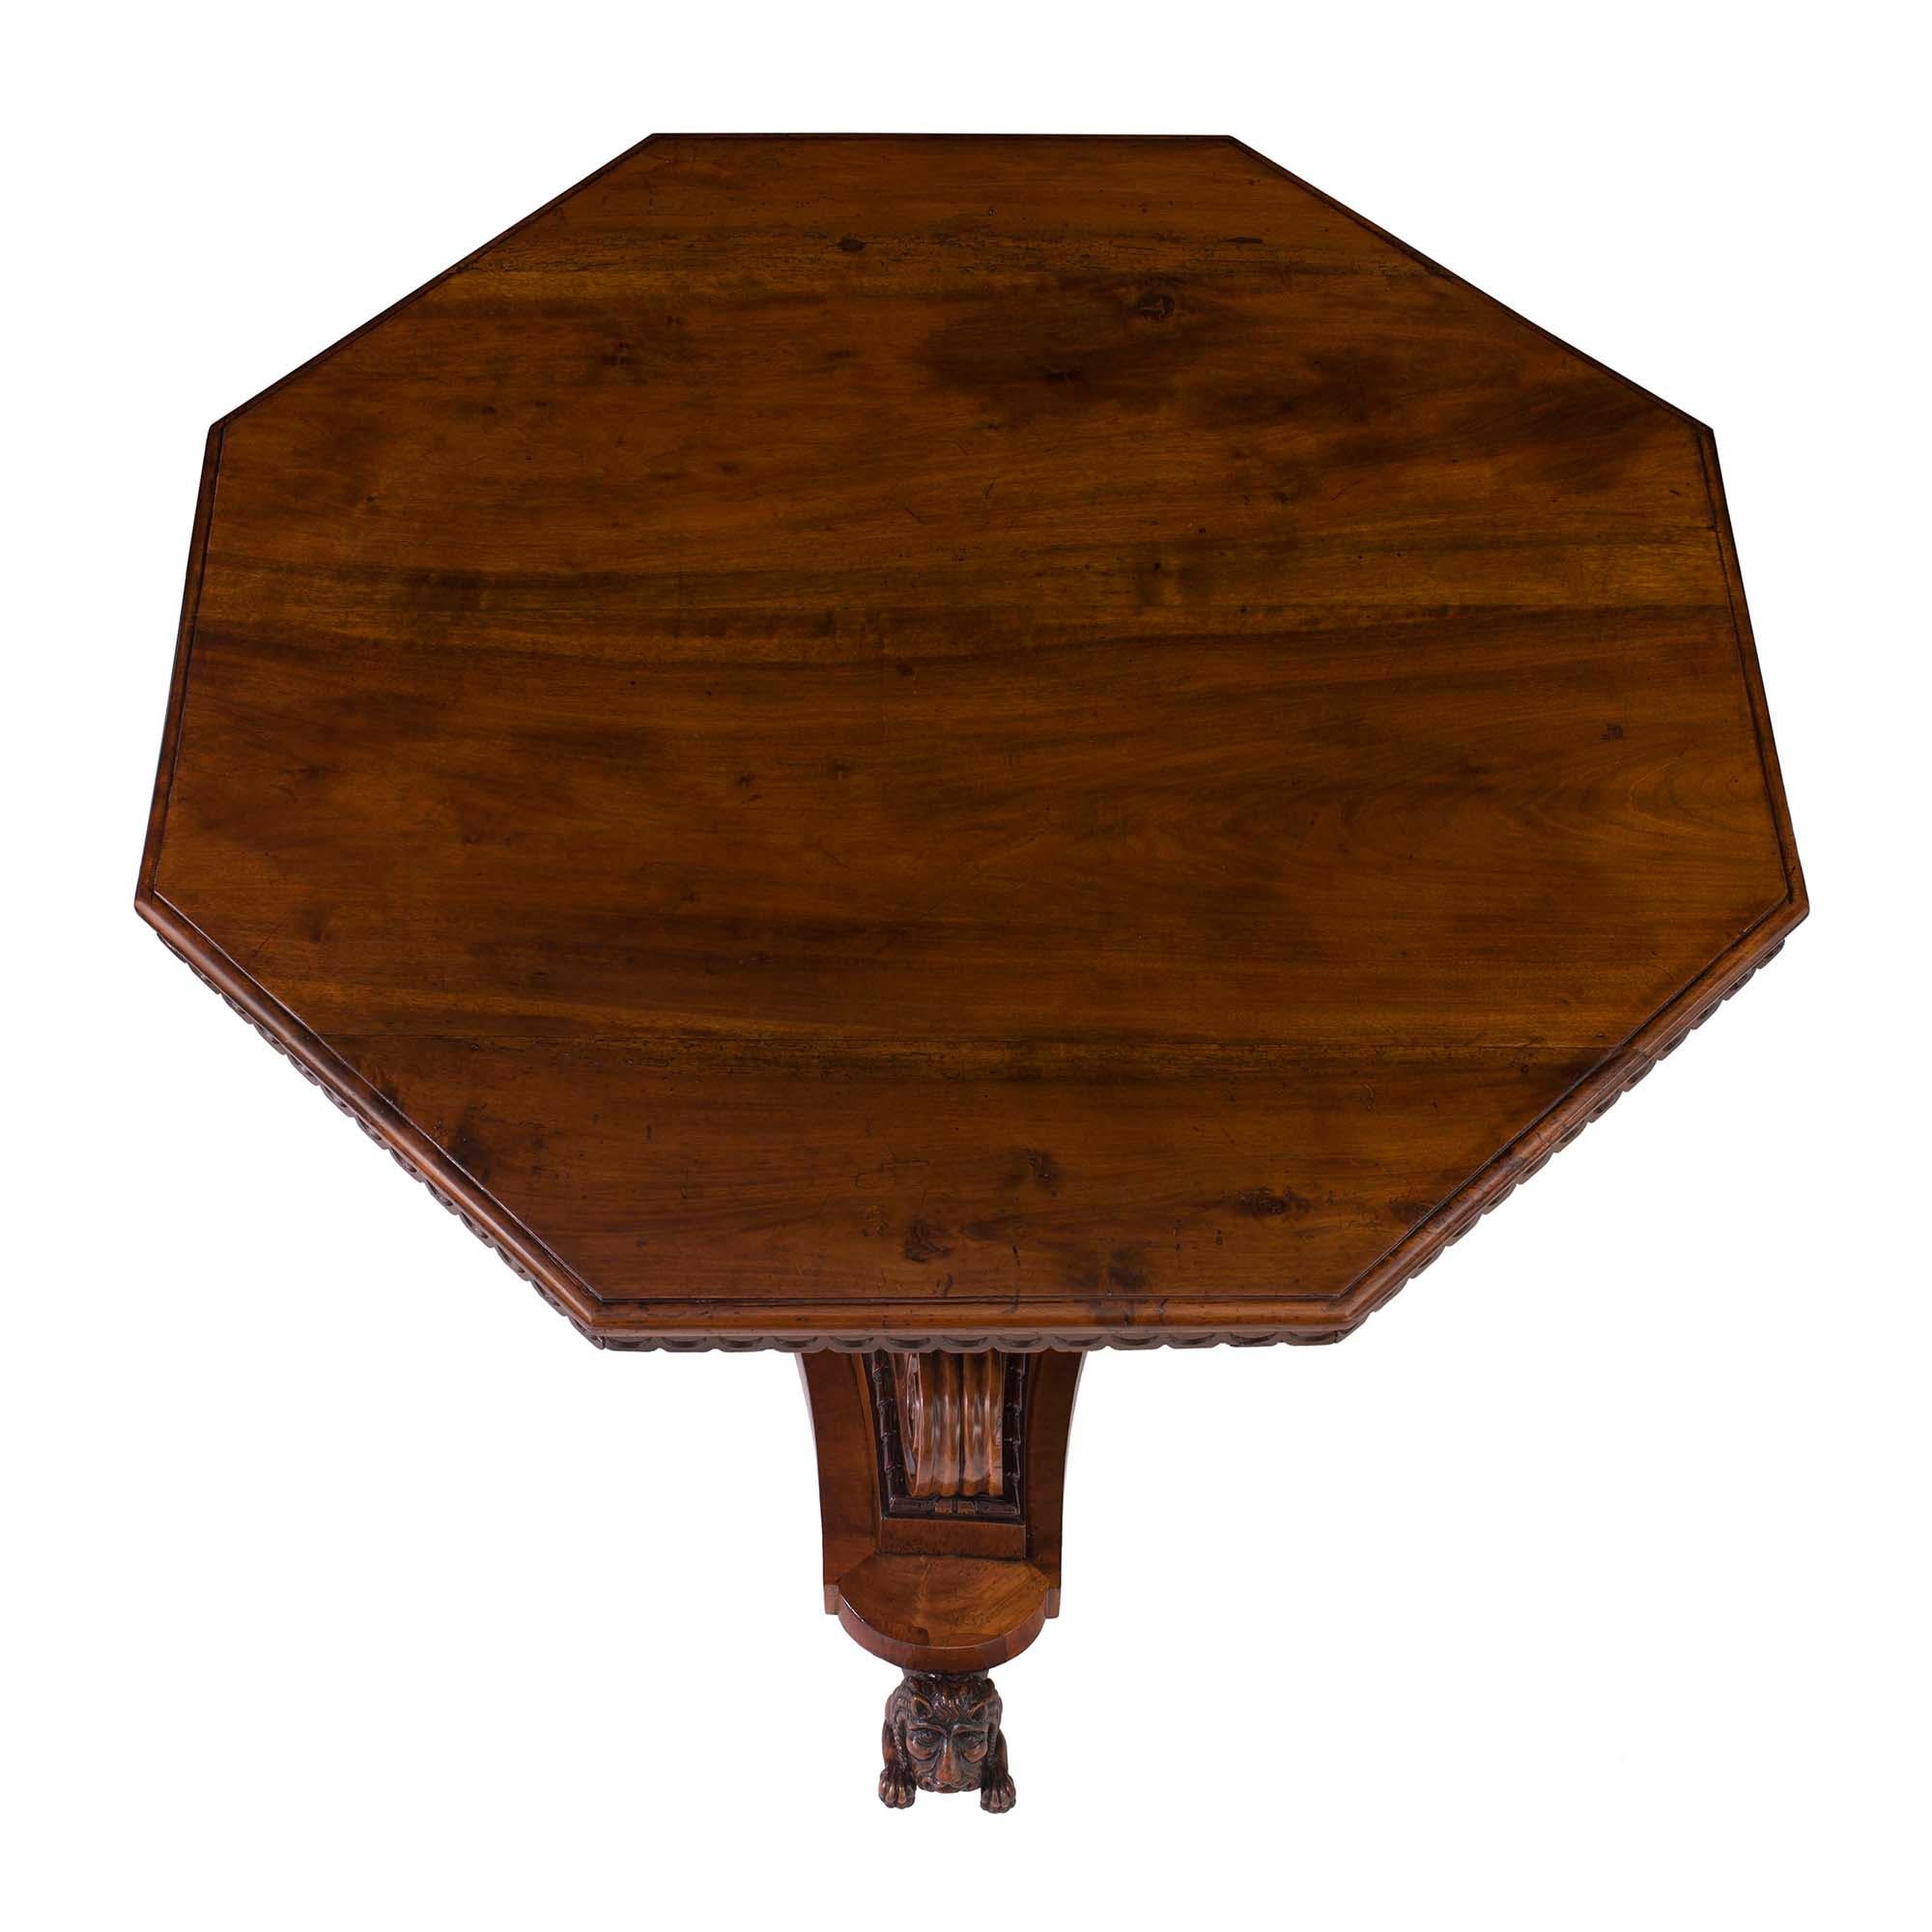 Une monumentale table centrale octogonale toscane en noyer du XVIIIe siècle. La table repose sur trois pieds en forme de lion finement sculptés, sous une base triangulaire cannelée à côtés concaves. Au-dessus de chacun des trois lions, une